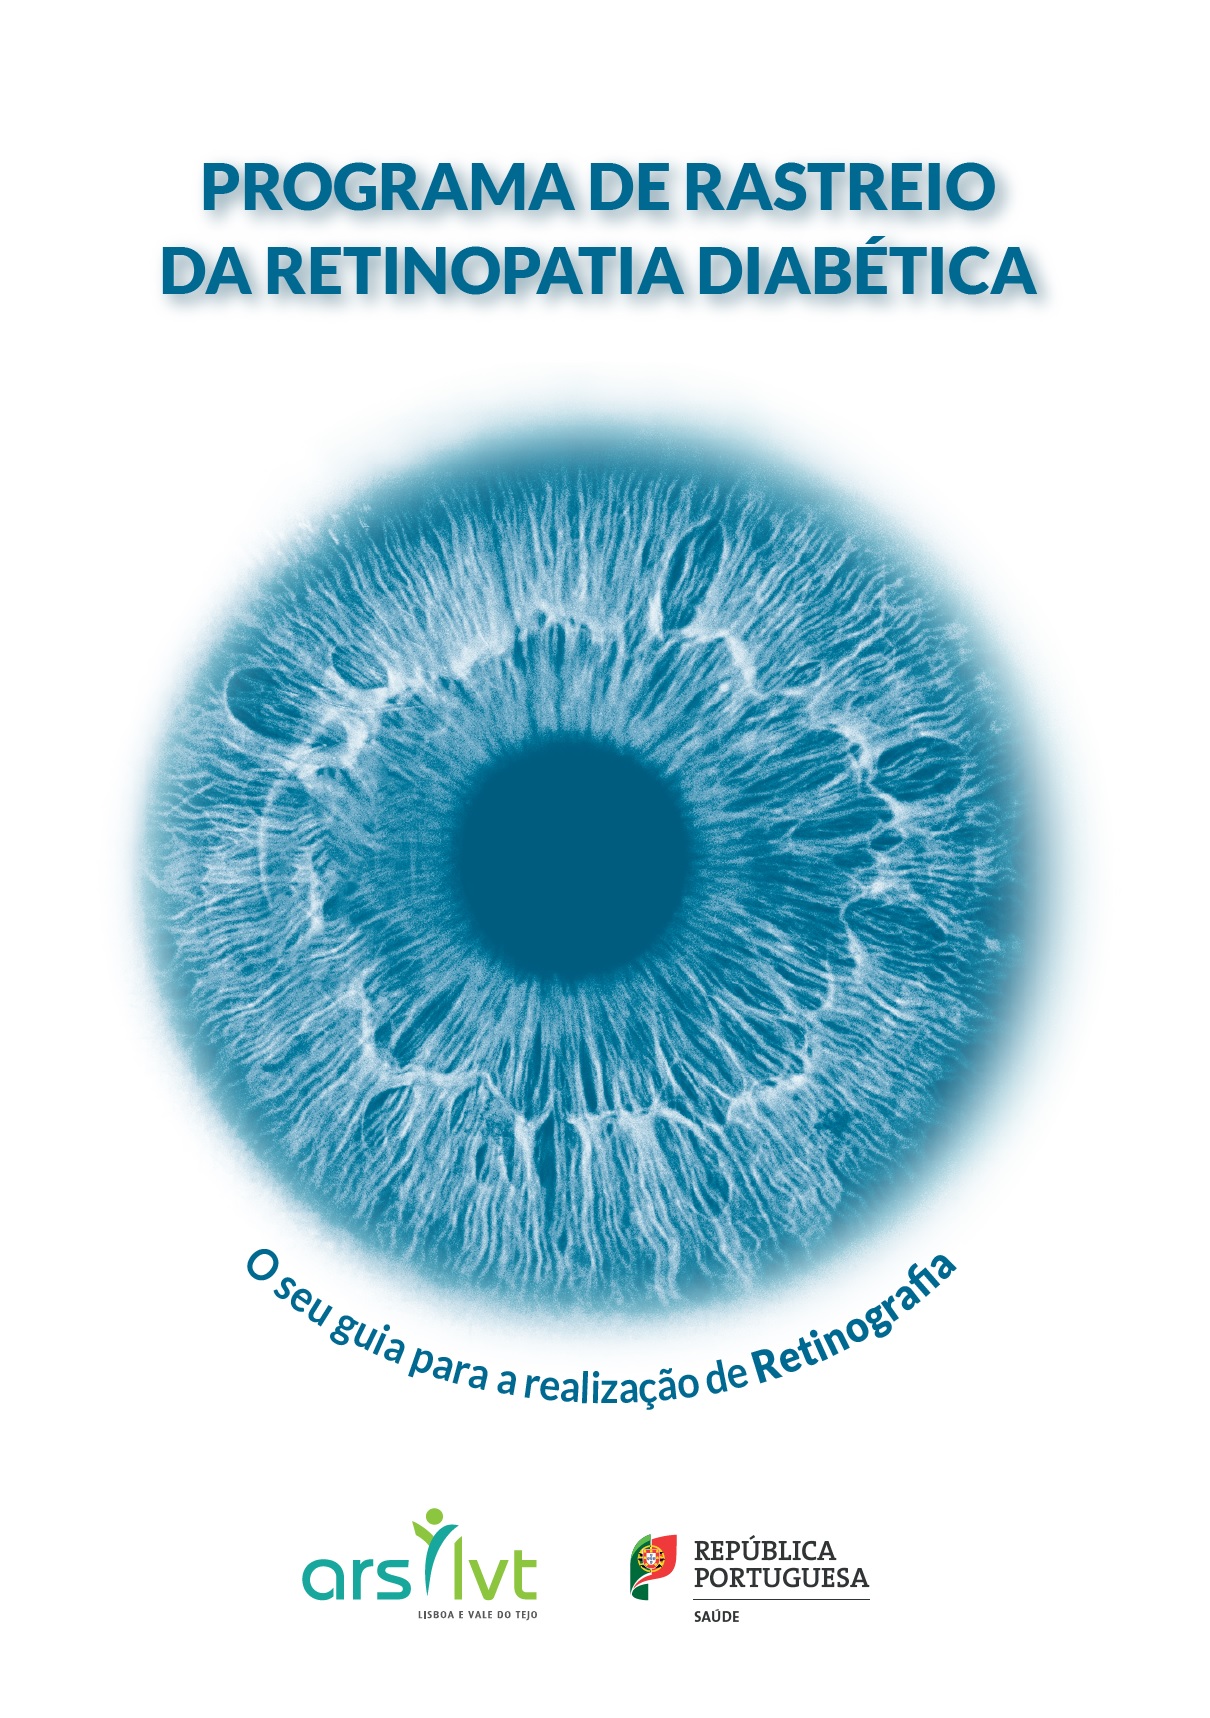 RastreioDiabetes2